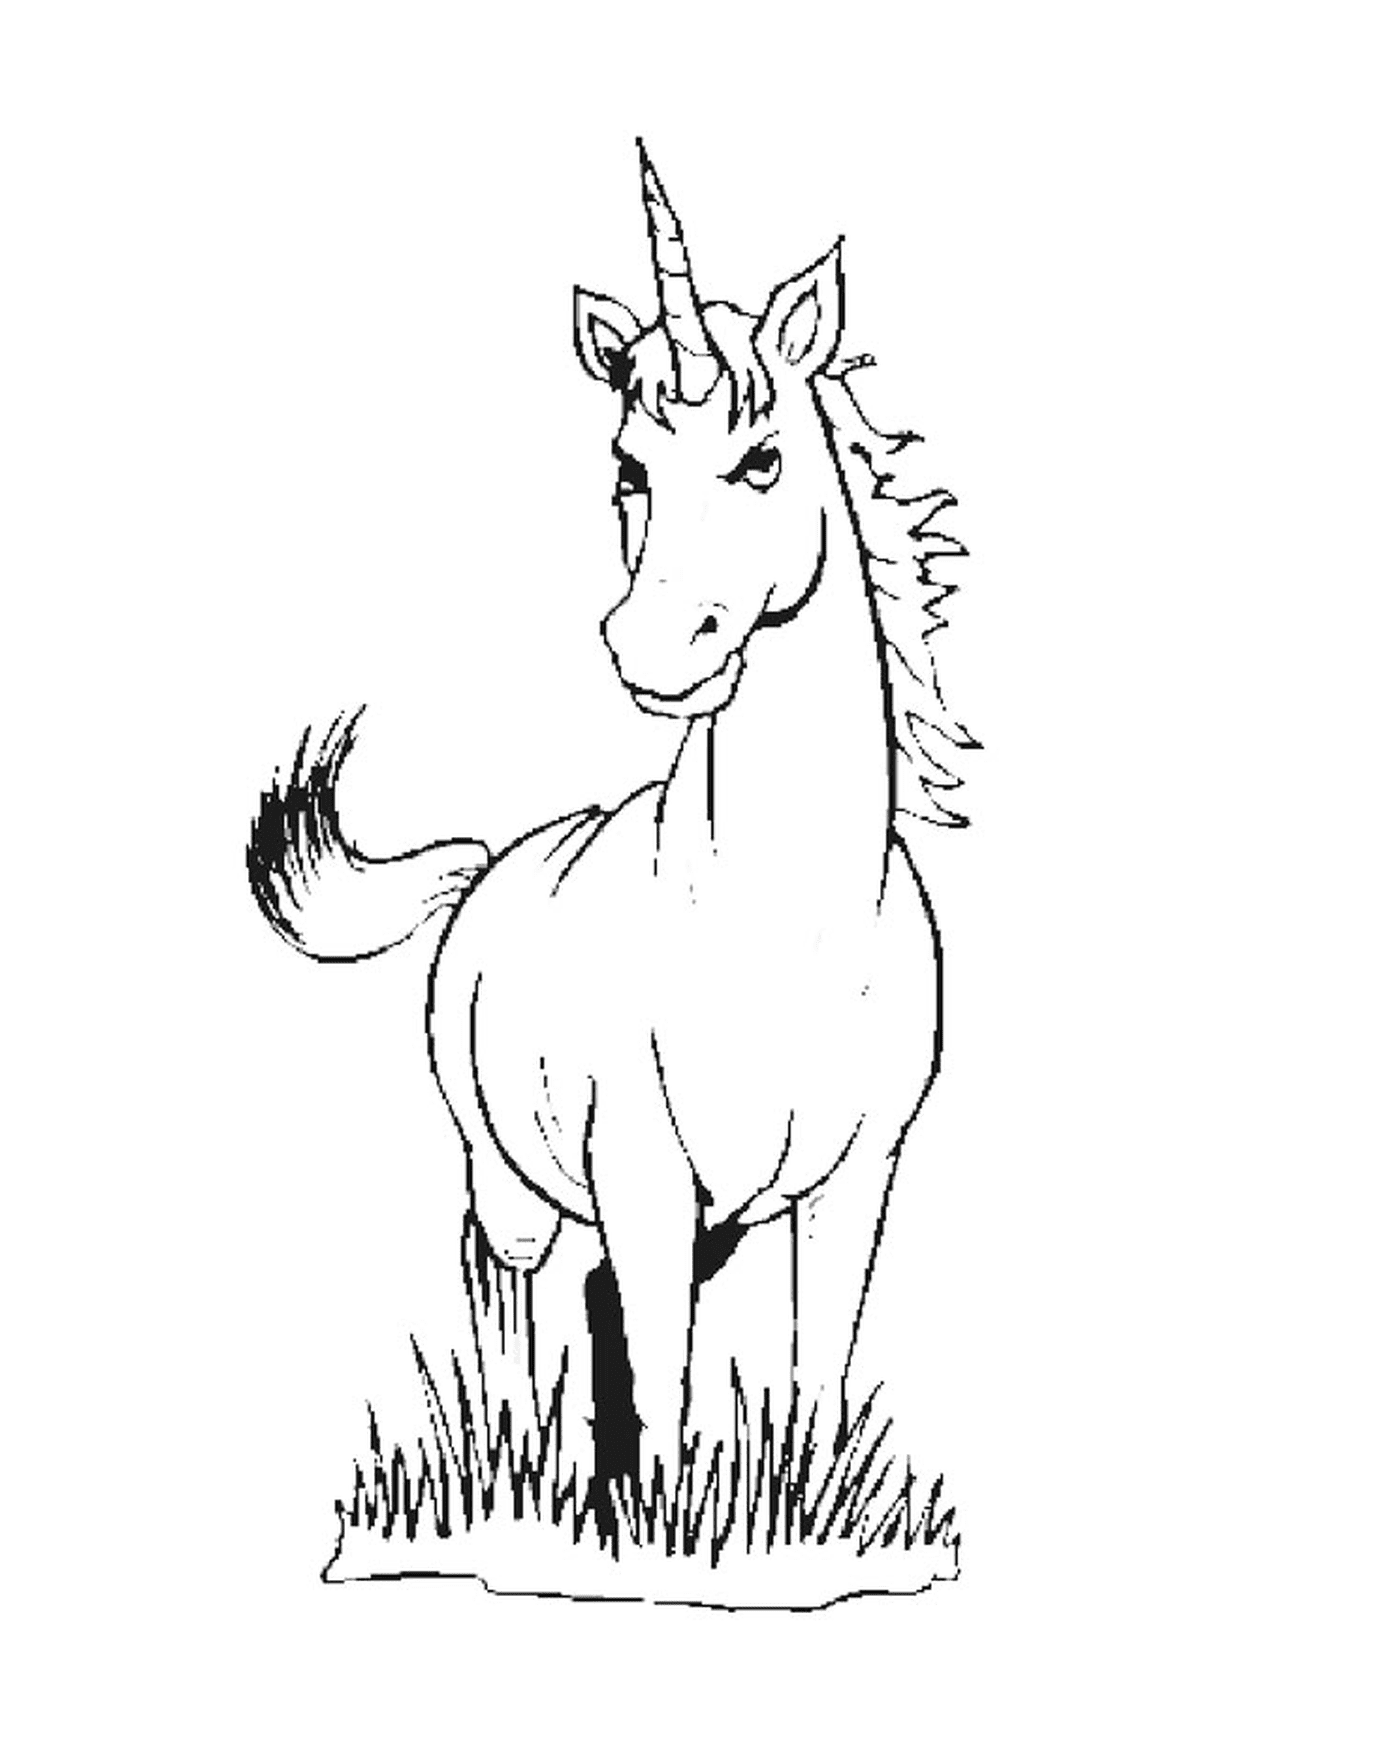  adorable and sweet unicorn 